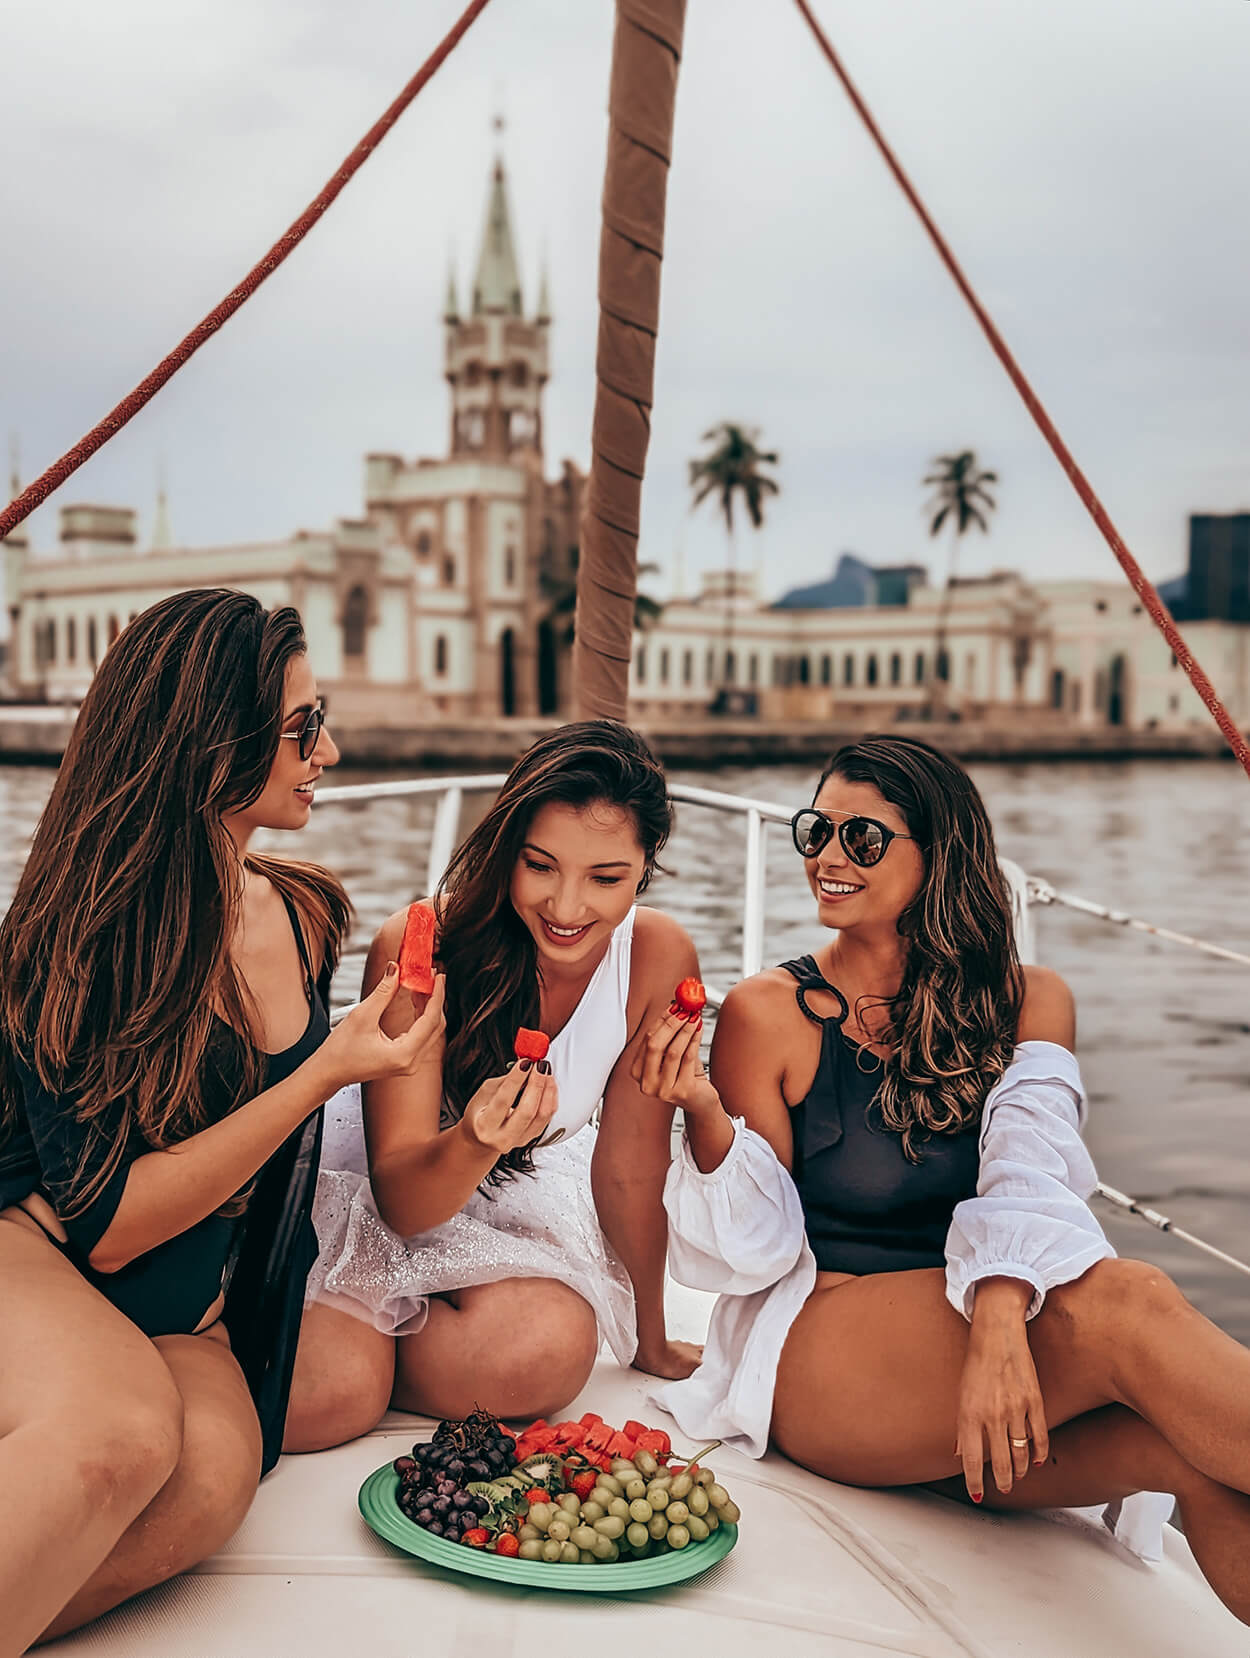 Três mulheres no veleiro comendo frutas e dando risada